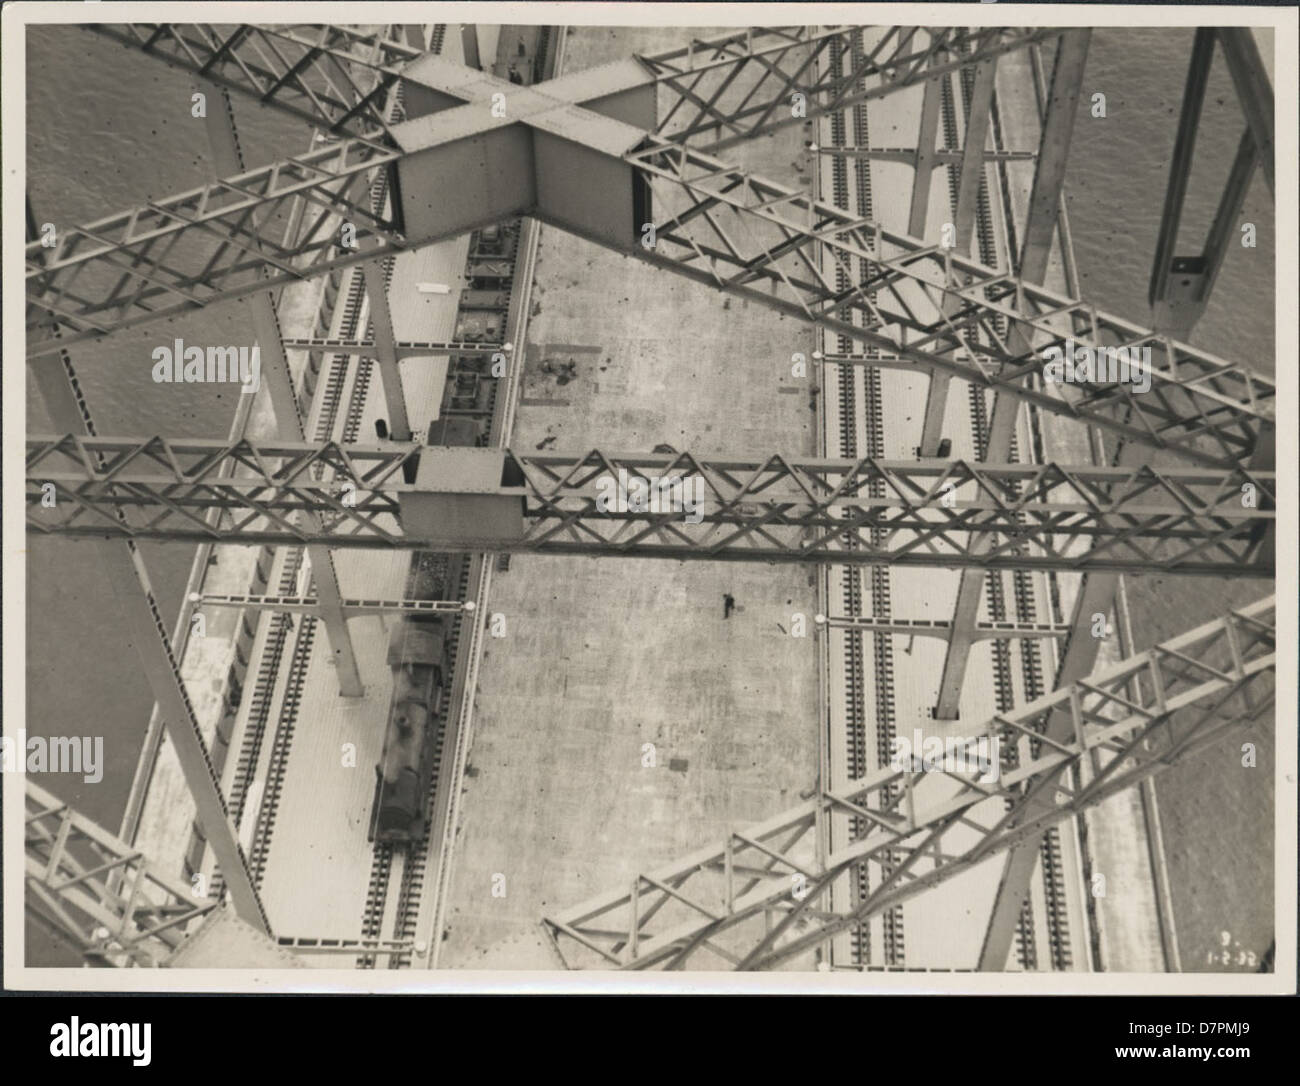 87/1353-132tirage photographique, des trains et des voitures sur le Harbour Bridge, l'argent / gélatine / papier, photographie de la Nouvelle Galles du sud Ministère des Travaux publics, Sydney, Australie, Janvier, 1932 Banque D'Images